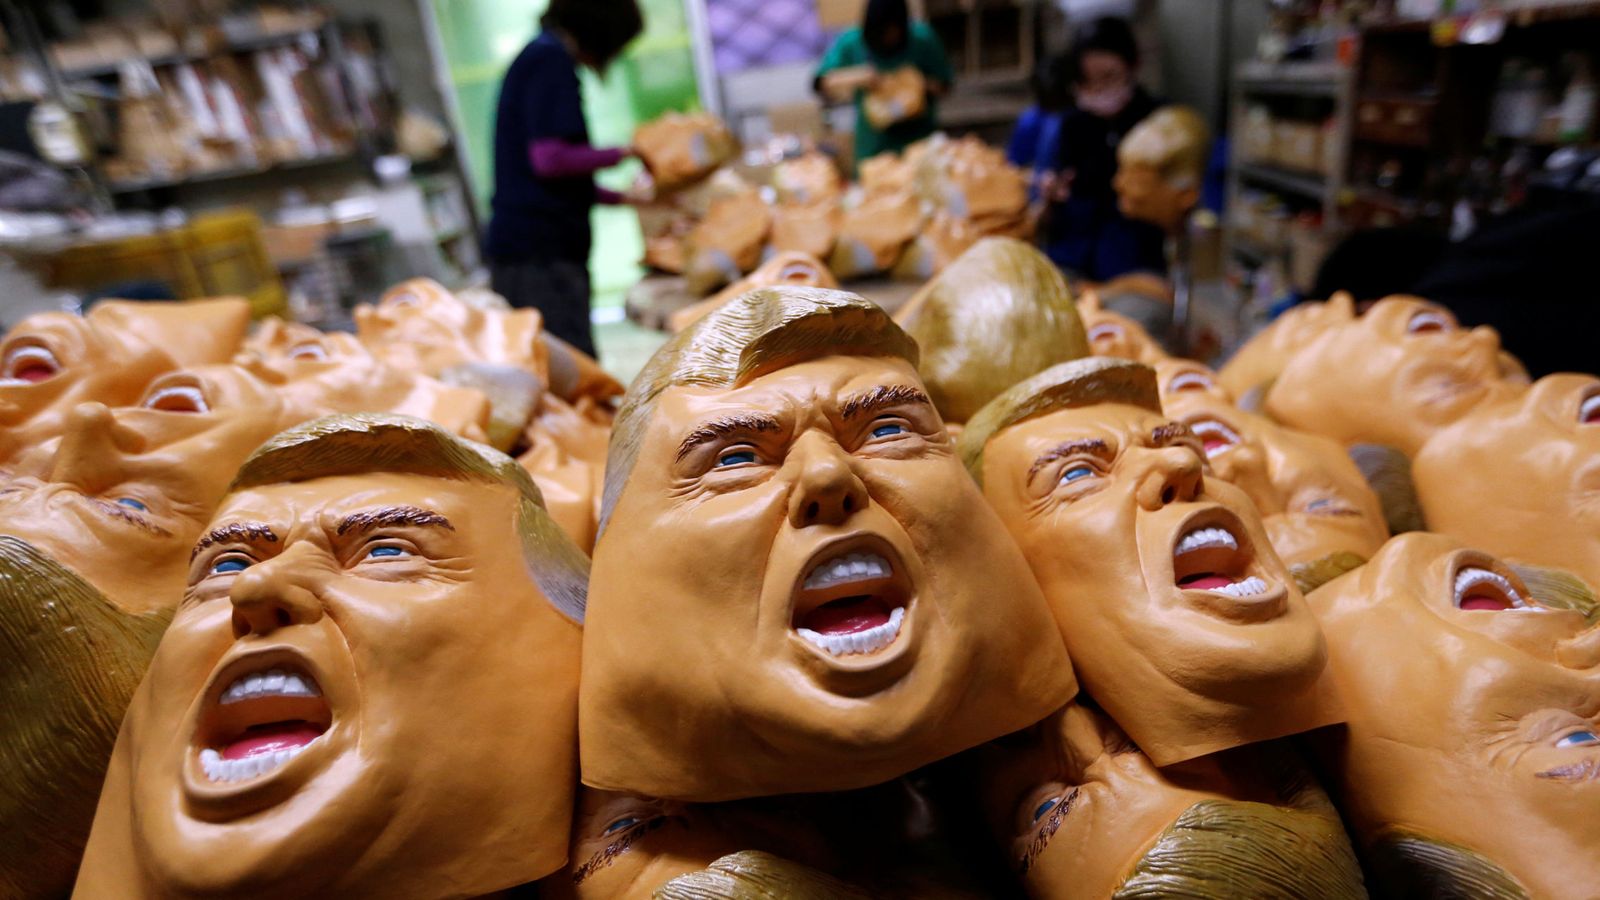 Foto: Varias máscaras con la cara de Donald Trump, presidente electo de Estados Unidos. (Reuters)